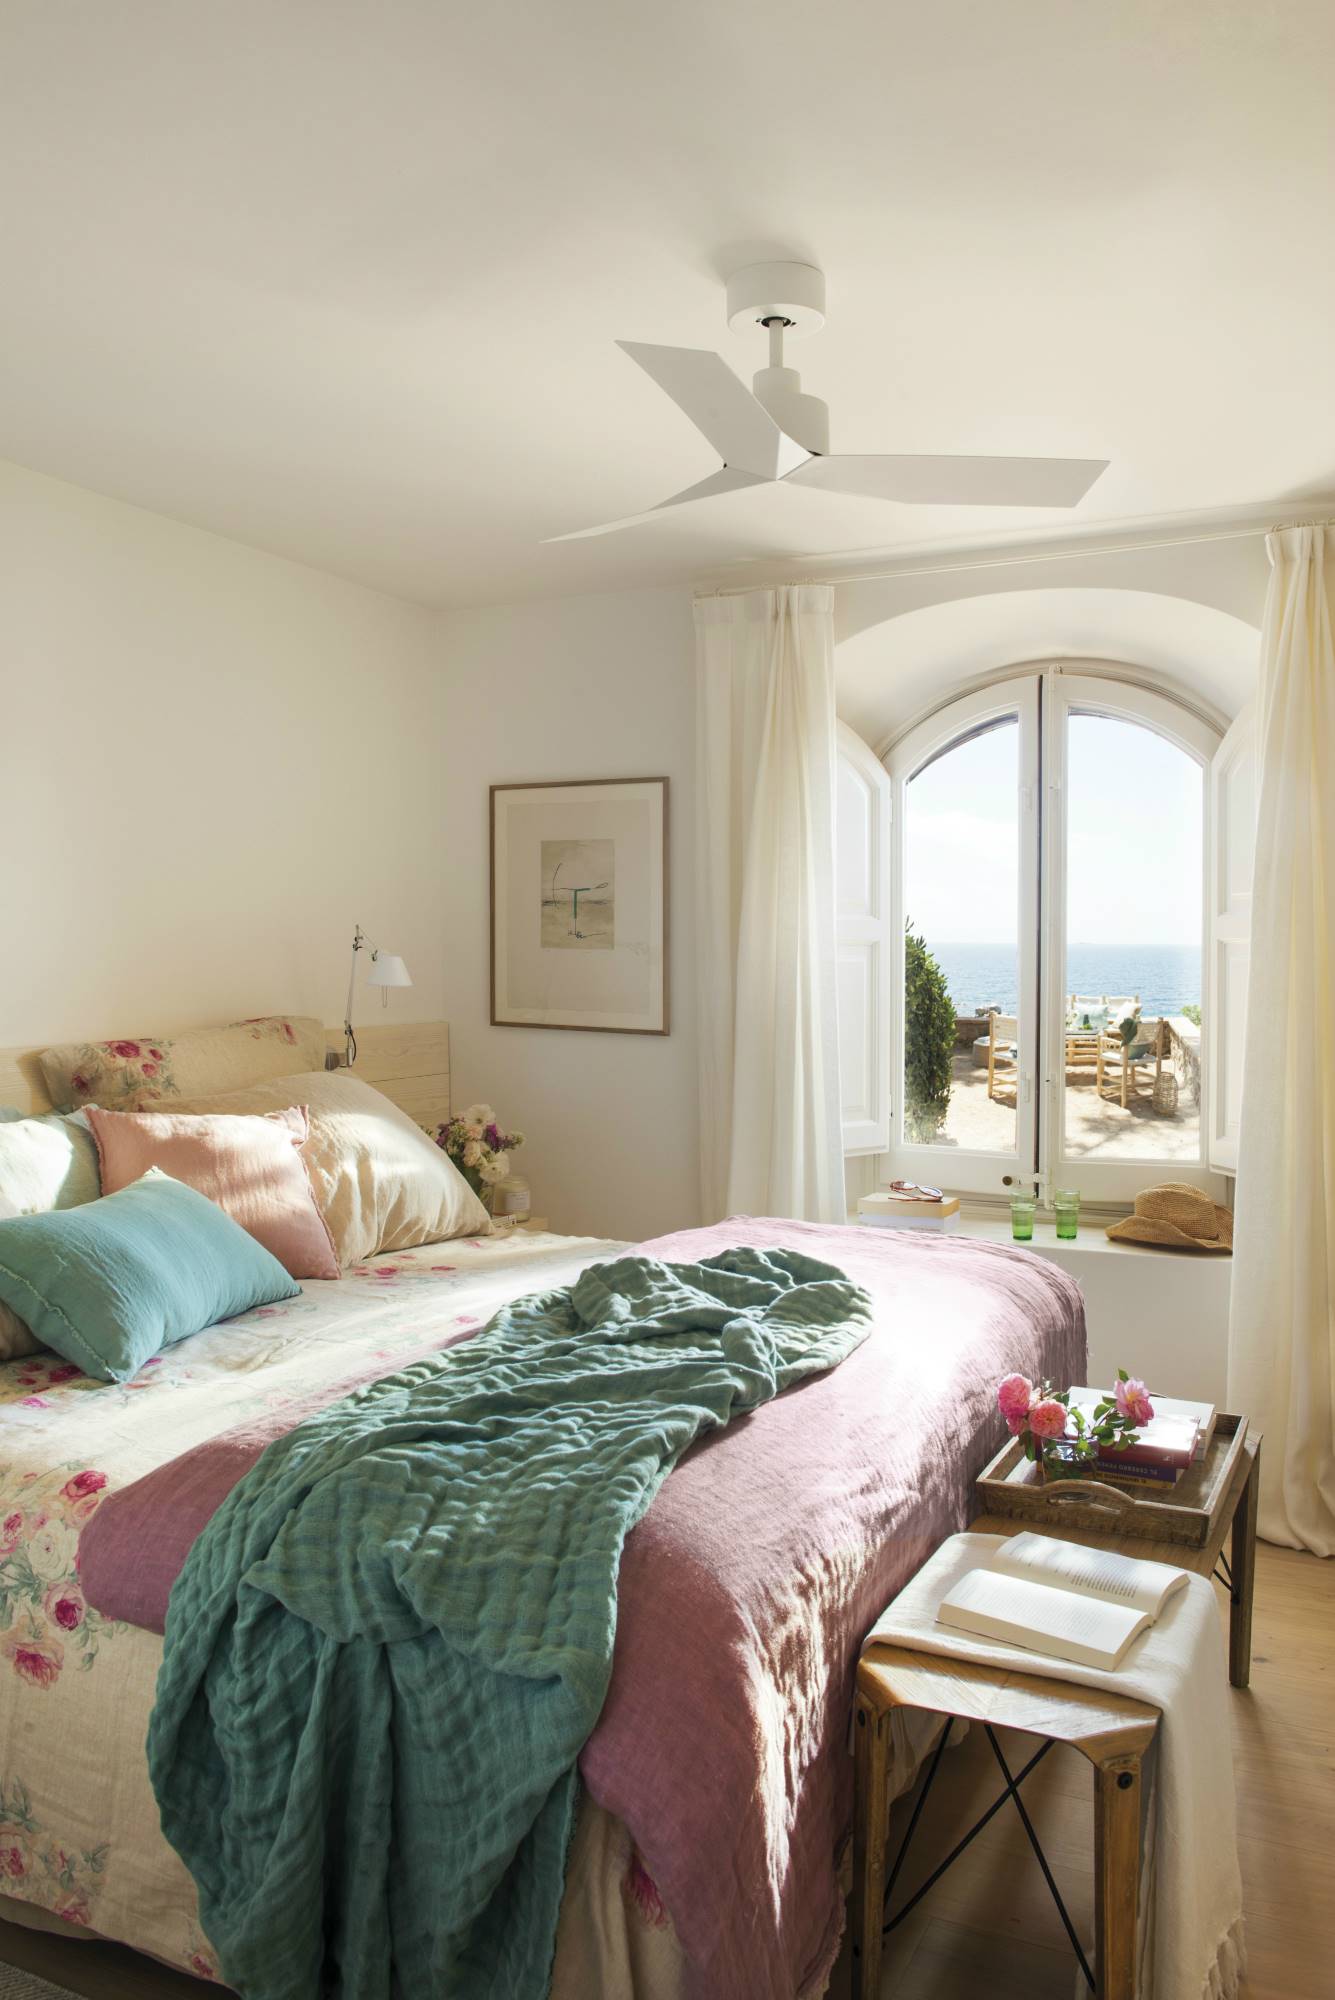 Dormitorio veraniego con estampado de flores combinado con textiles en verde azulado y lila